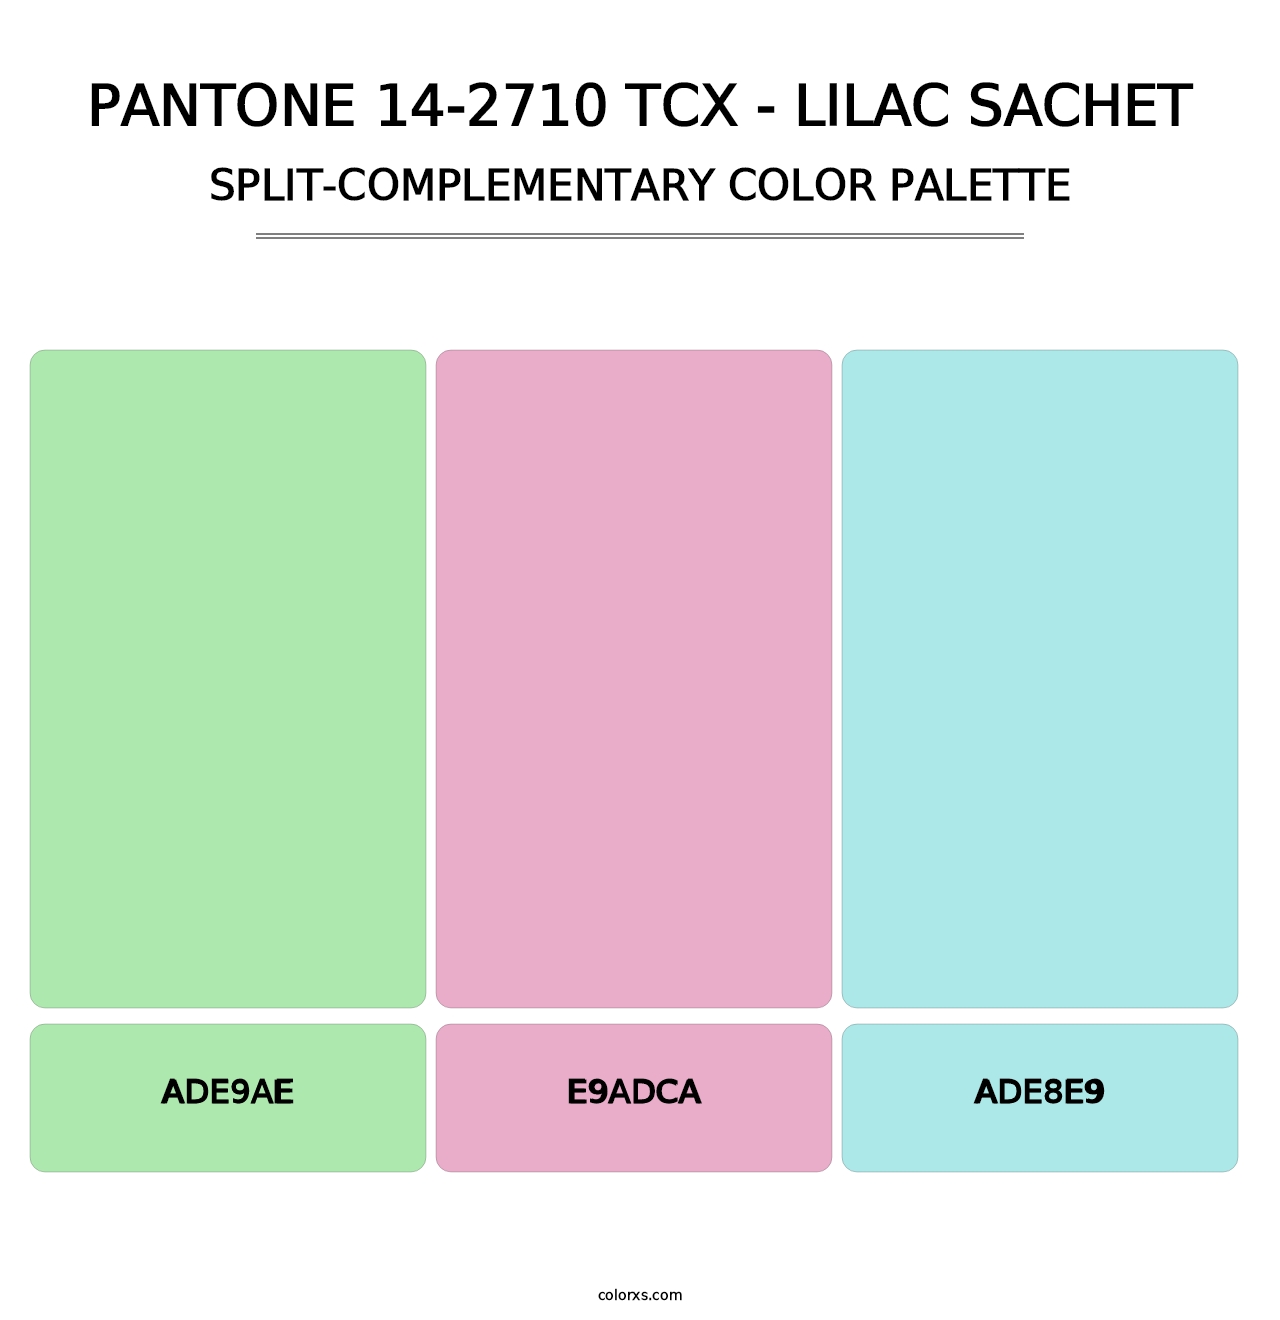 PANTONE 14-2710 TCX - Lilac Sachet - Split-Complementary Color Palette